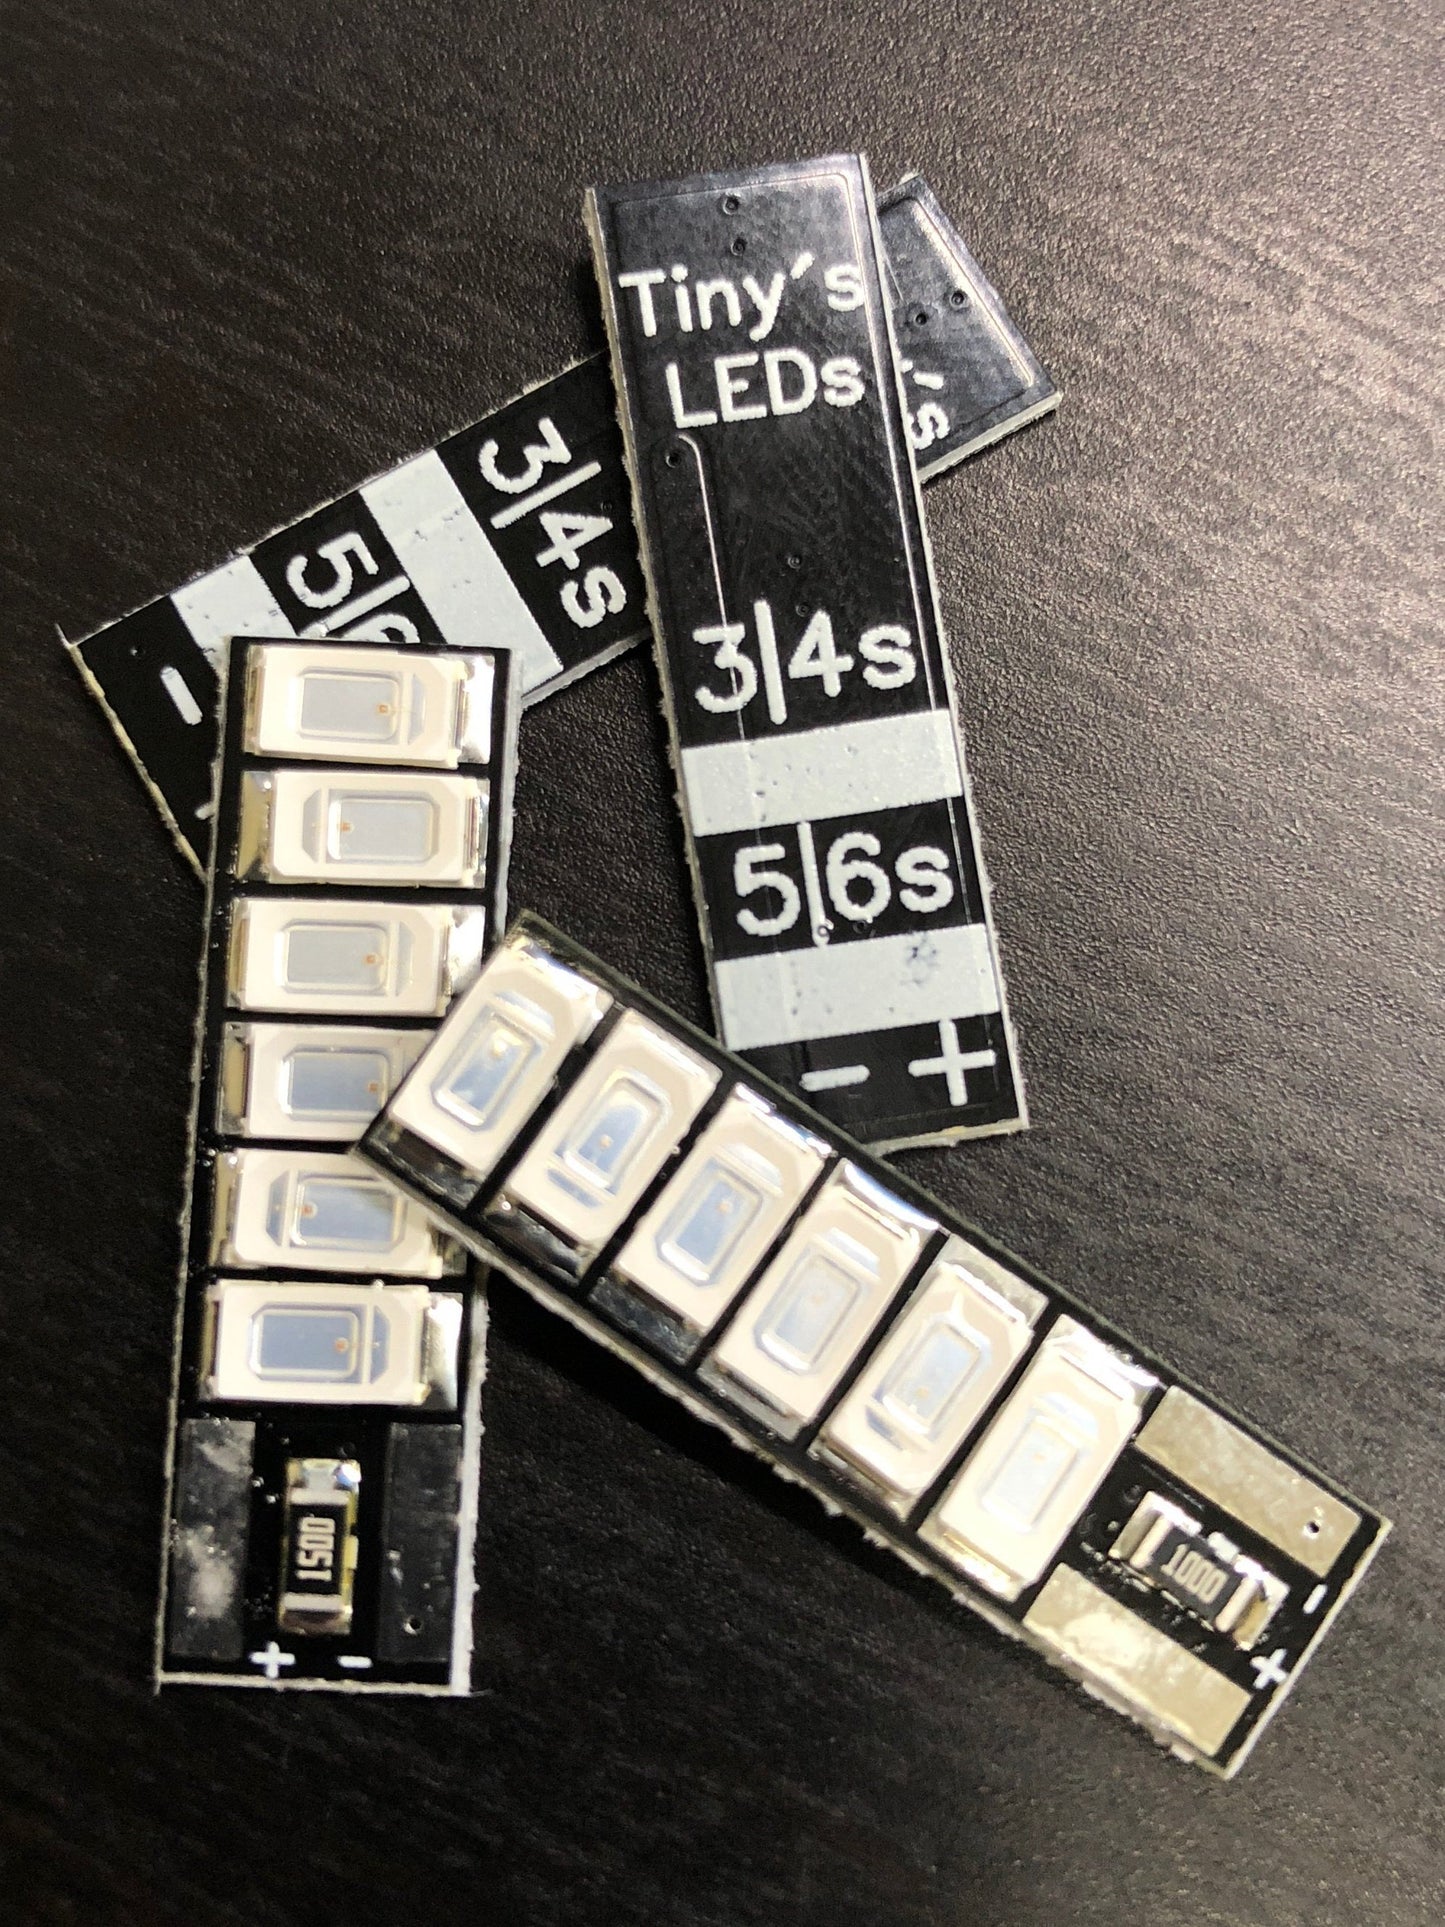 3-6s Not-as-Tiny LEDs - Tiny's LEDs